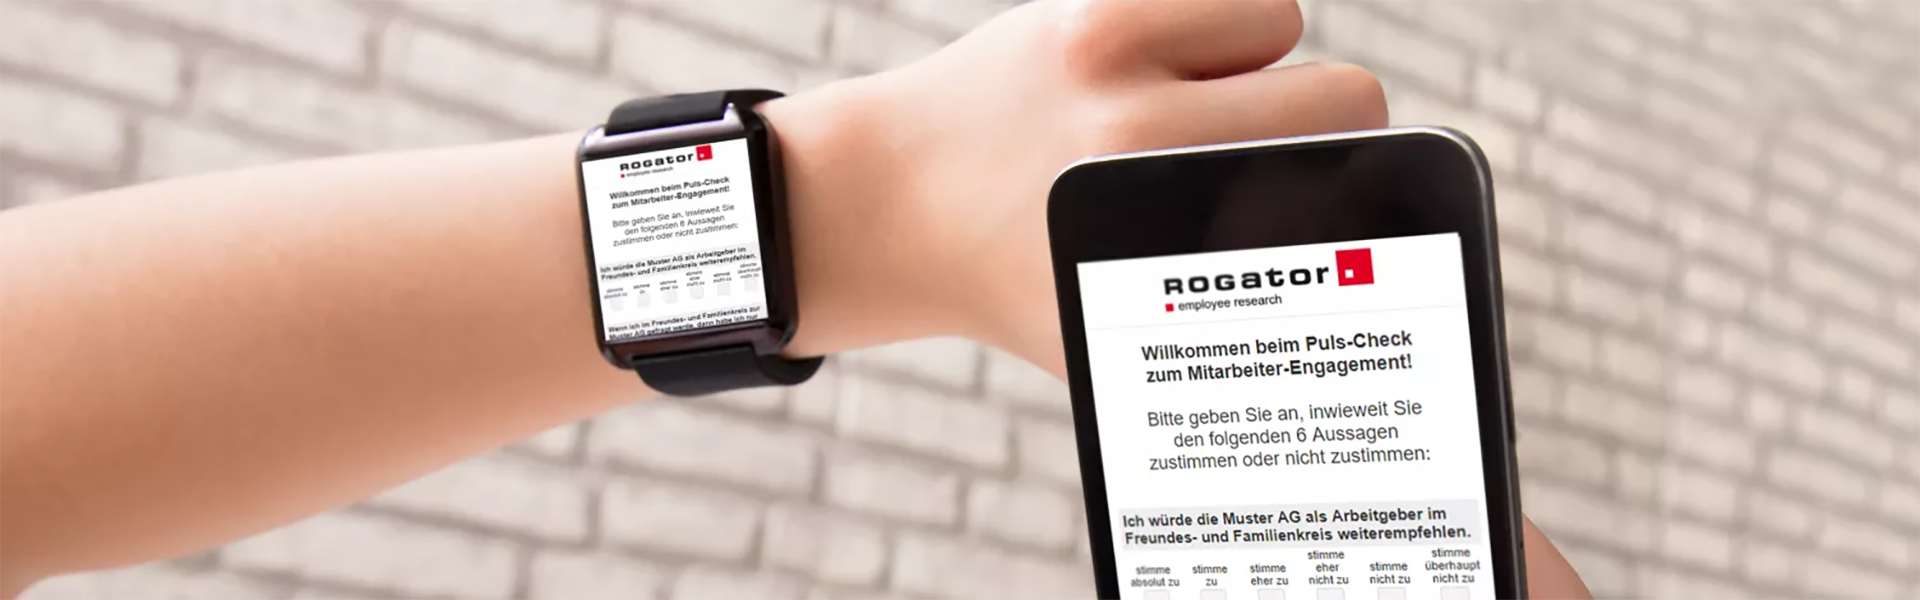 Eine Smartwatch und Smartphone-App symbolisieren die Puls-Befragung mit Rogator.